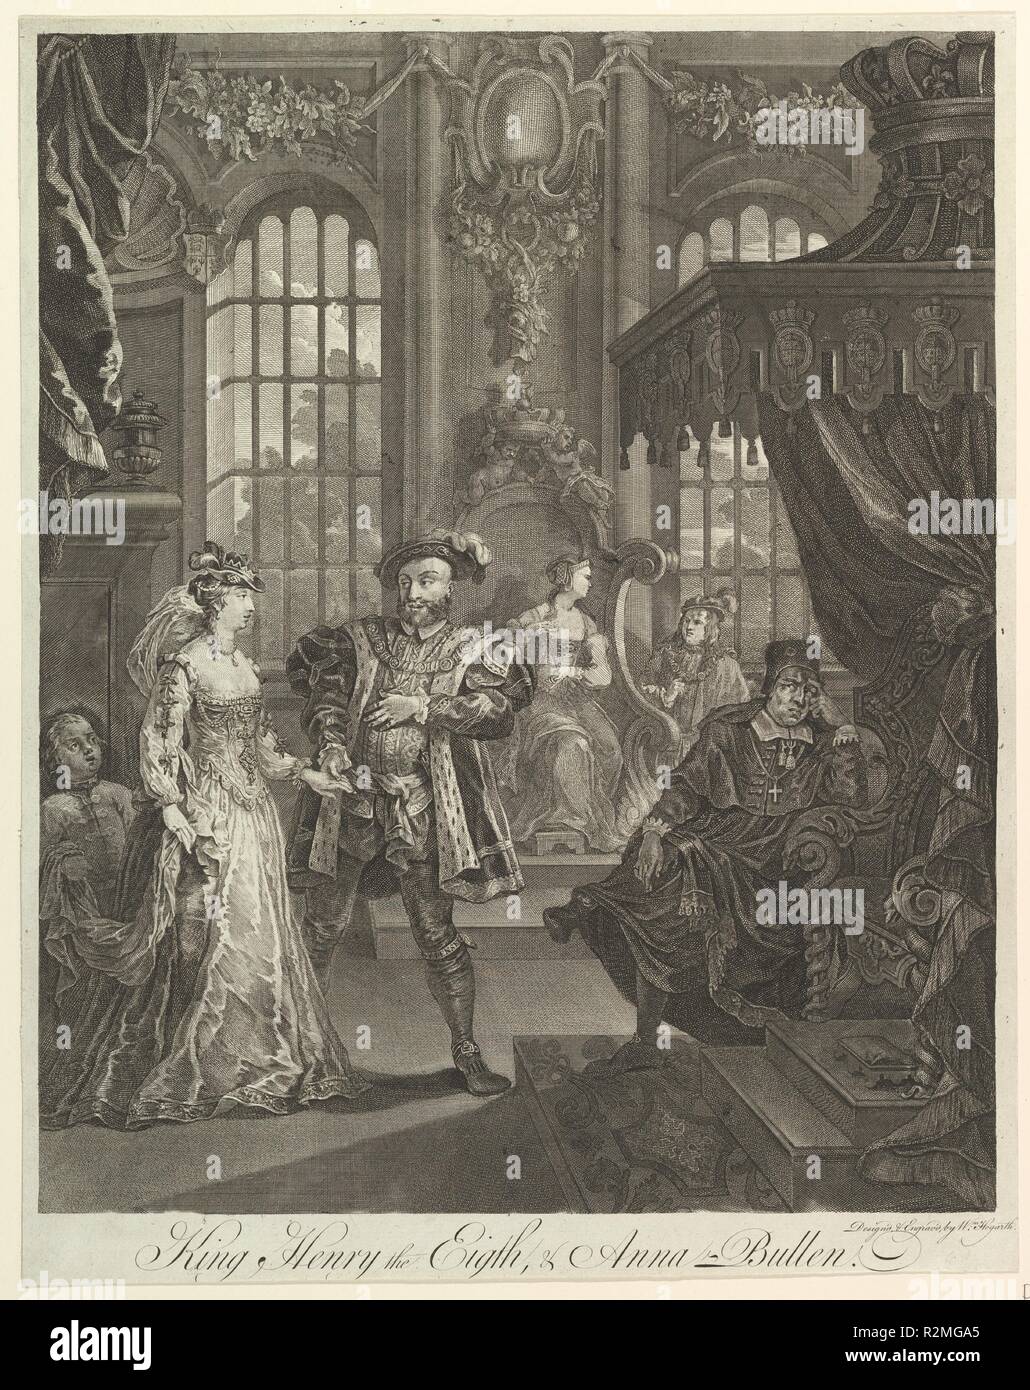 Il re Enrico VIII e Anna Bullen. Artista: William Hogarth (British, Londra Londra 1697-1764). Dimensioni: foglio: 18 9/16 x 14 11/16 in. (47,1 x 37,3 cm). Sitter: Henry VIII, re di Inghilterra e Irlanda (British, Londra 1491-1547 Londra); Anne Boleyn (British, ca. 1500-1536); il Cardinale Thomas Wolsey (British, 1471/1475-1530). Oggetto: William Shakespeare (British, Stratford-upon-Avon 1564-1616 Stratford-upon-Avon). Data: ca. 1728. Museo: Metropolitan Museum of Art di New York, Stati Uniti d'America. Autore: William Hogarth. Dopo William Hogarth. Foto Stock